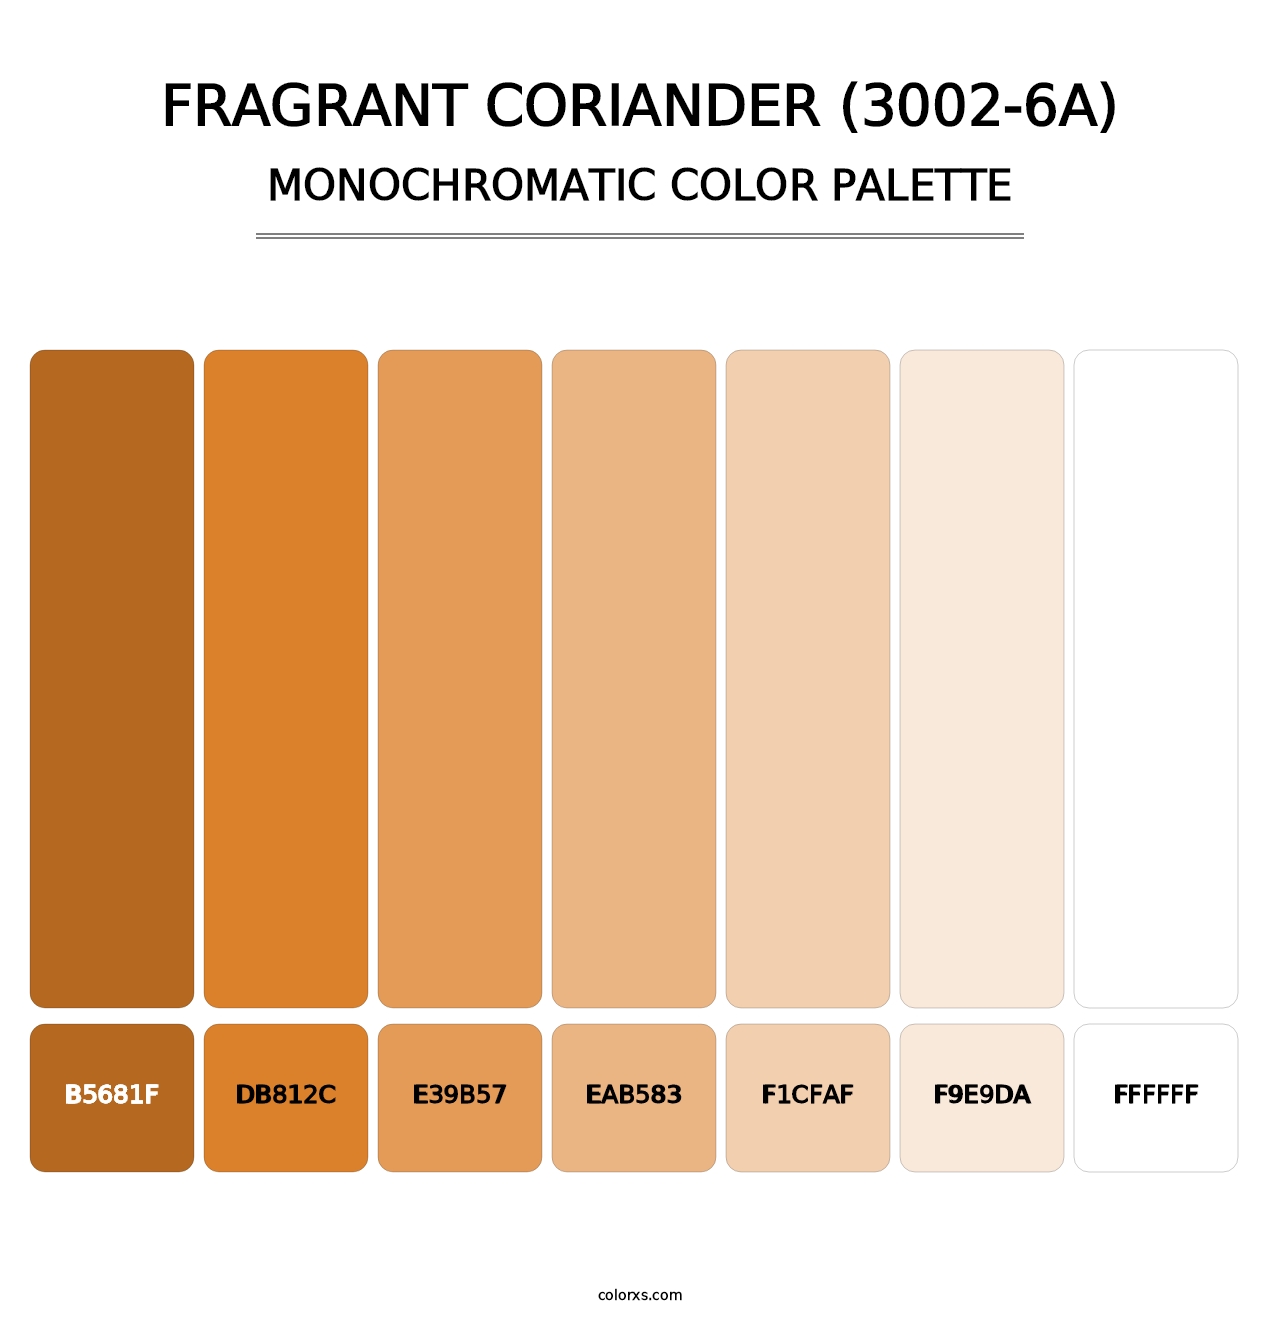 Fragrant Coriander (3002-6A) - Monochromatic Color Palette